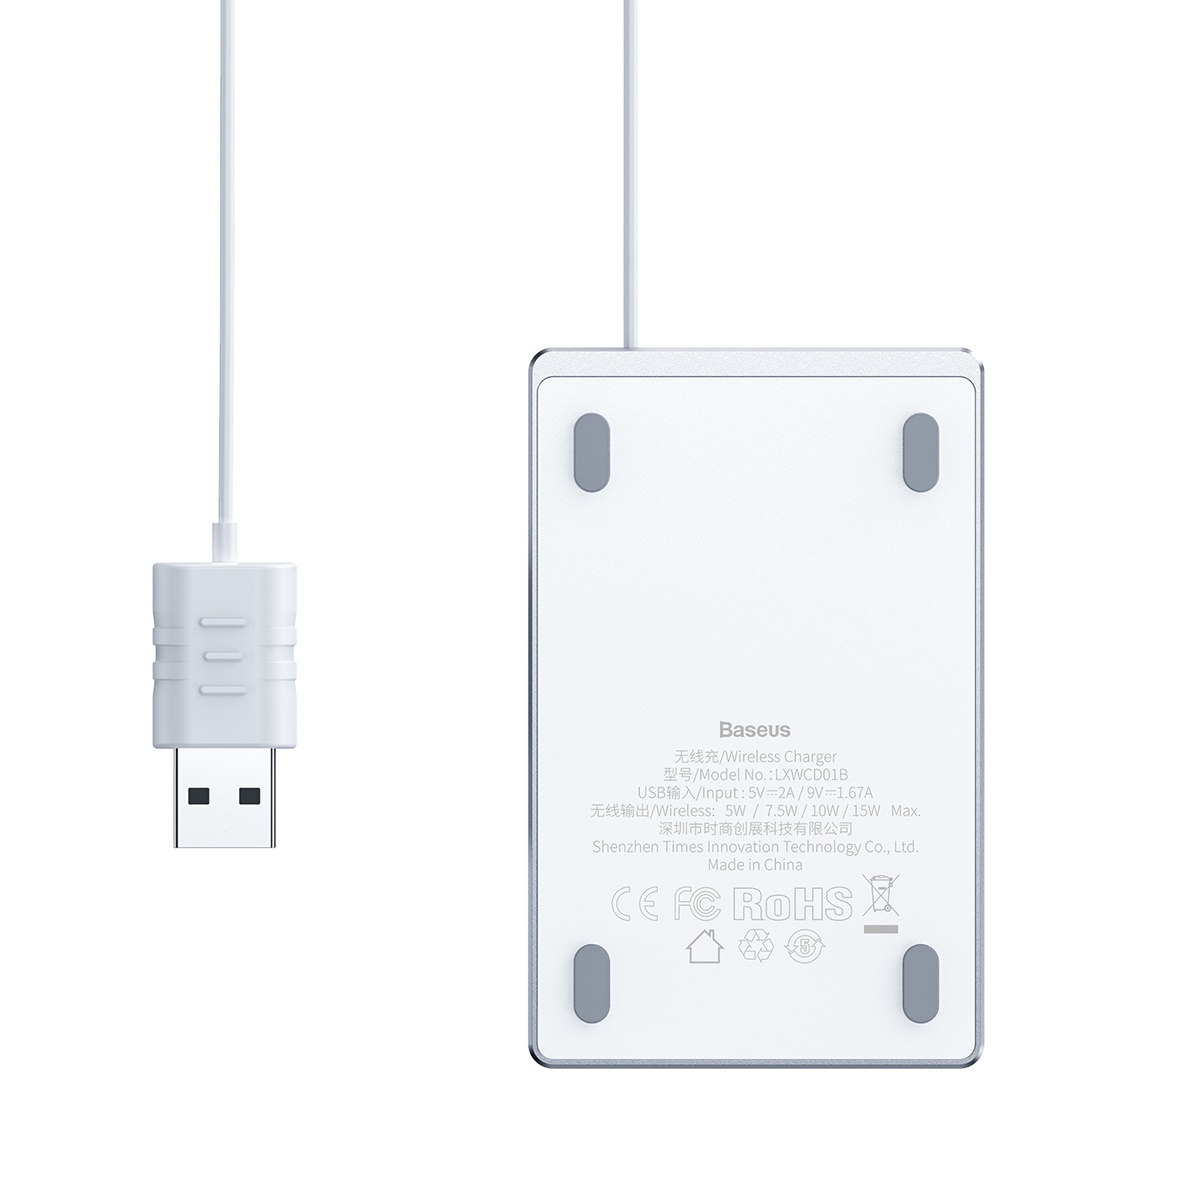 Baseus Card Ultratunn trådlös laddare+USB-kabel (1m), 15W, vit